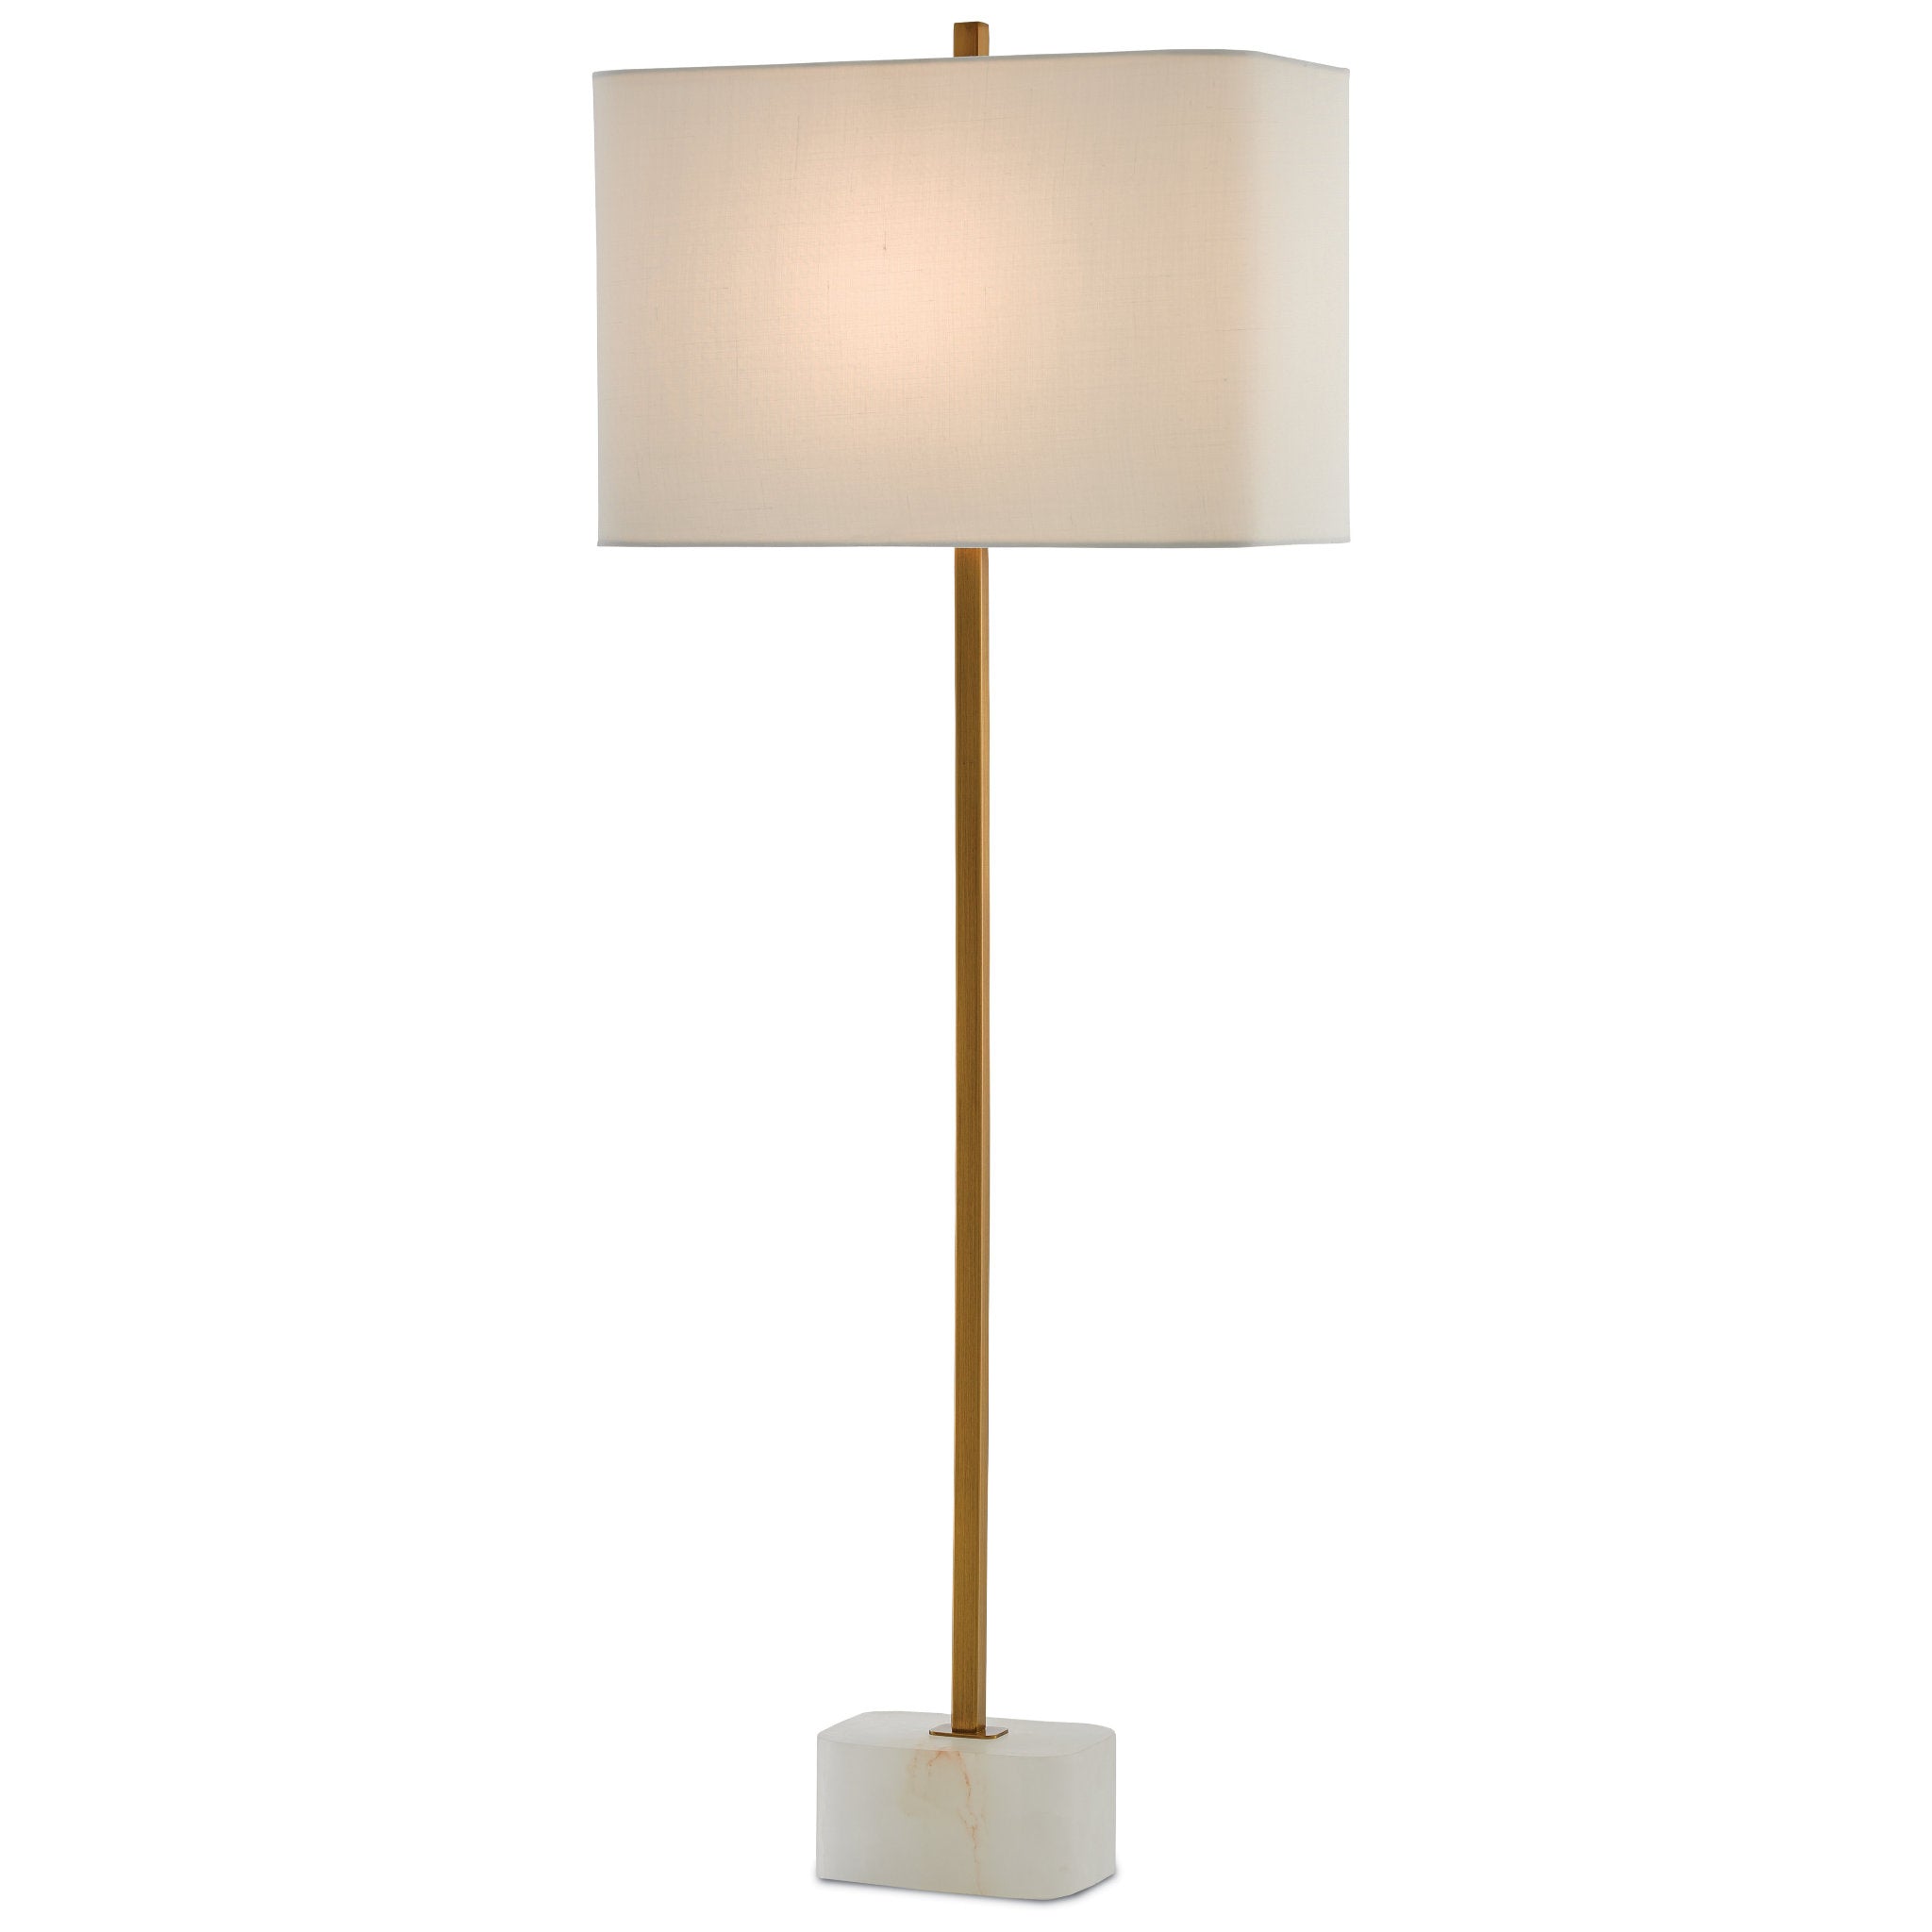 Felix Brass Table Lamp - Natural/Antique Brass